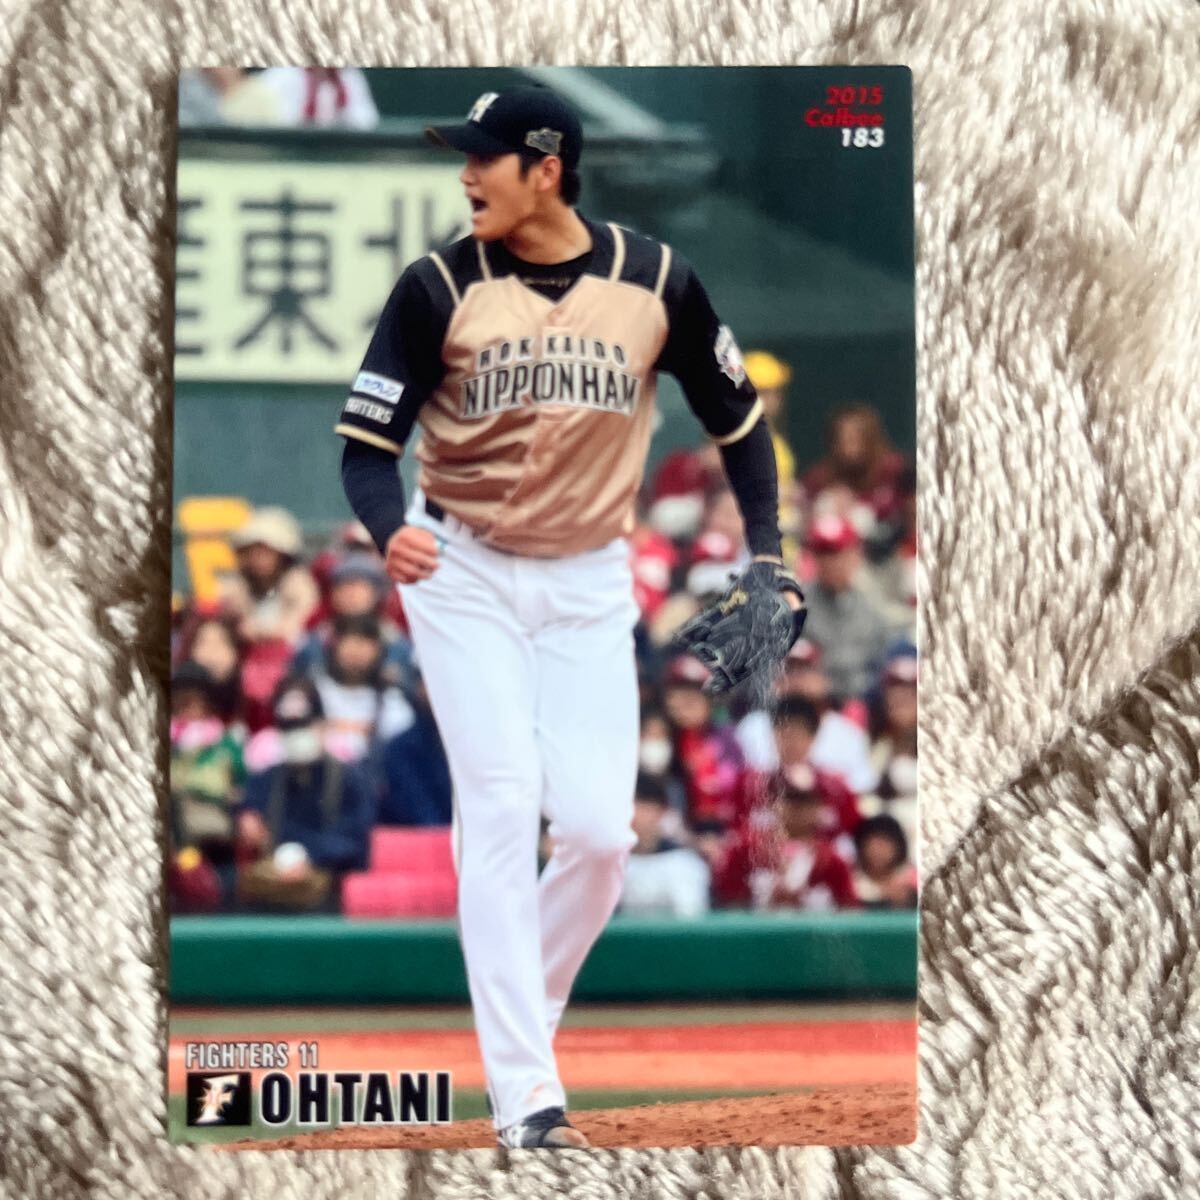 2014-2016 カルビー プロ野球チップス 大谷翔平 カード4枚セット_画像6